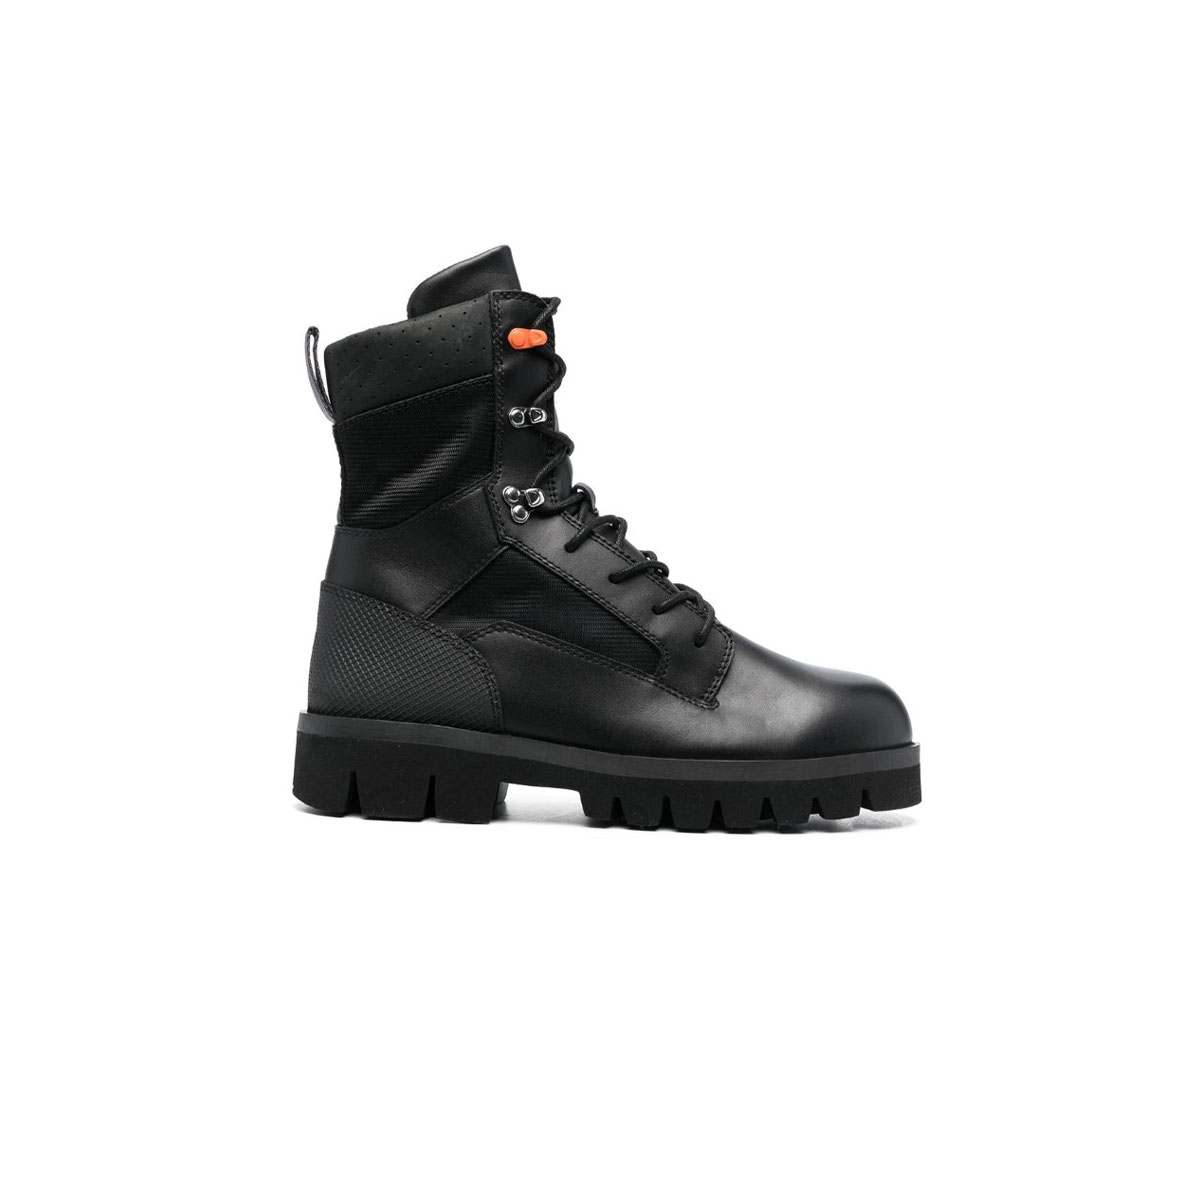 Παπούτσια Ανδρικό Μαύρο Lace Up Military Boots HERON PRESTON